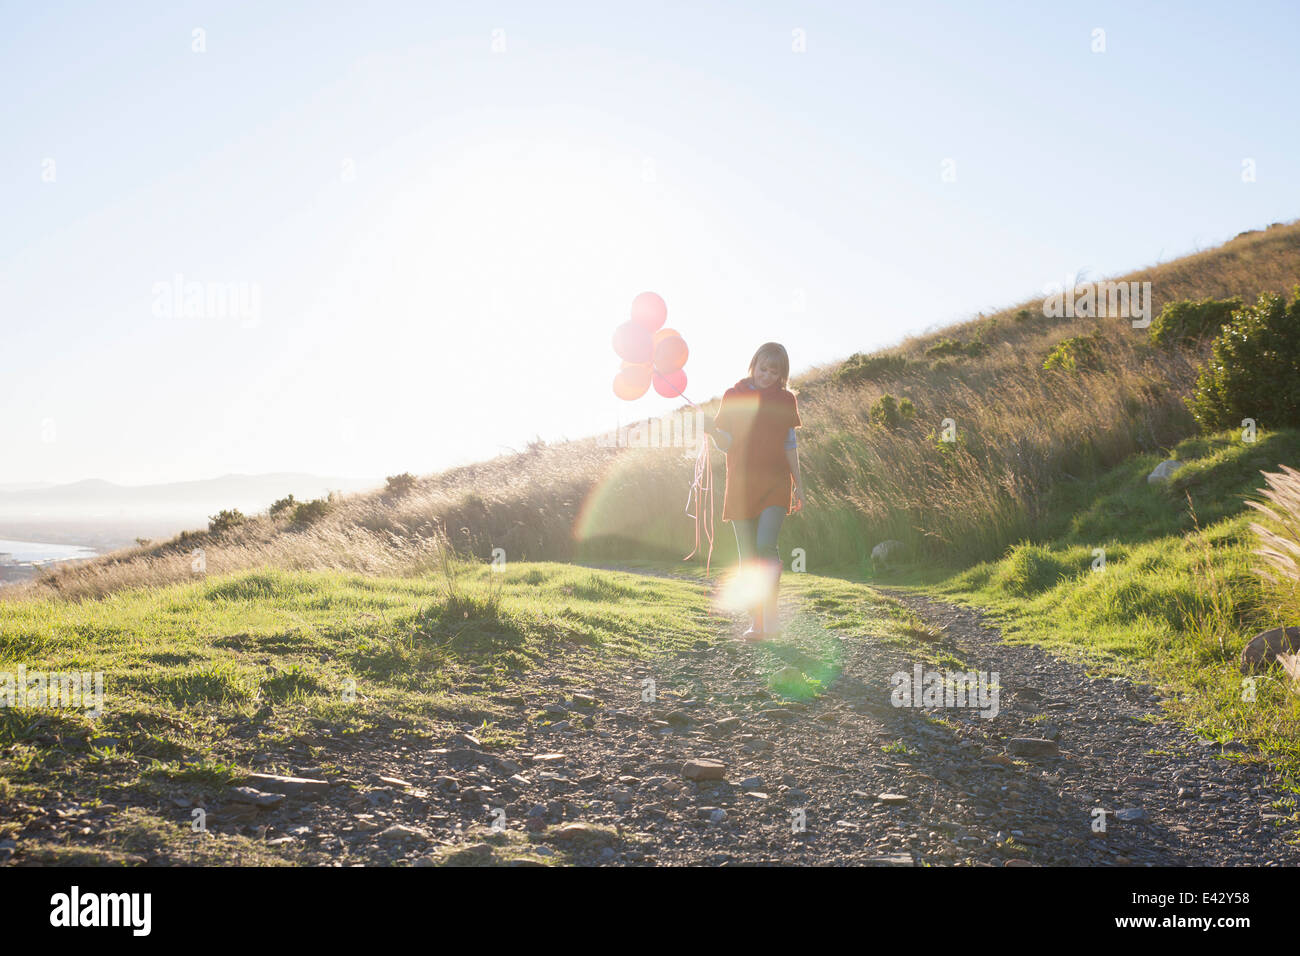 Jeune femme se promenant le long d'un chemin de terre avec des tas de ballons Banque D'Images